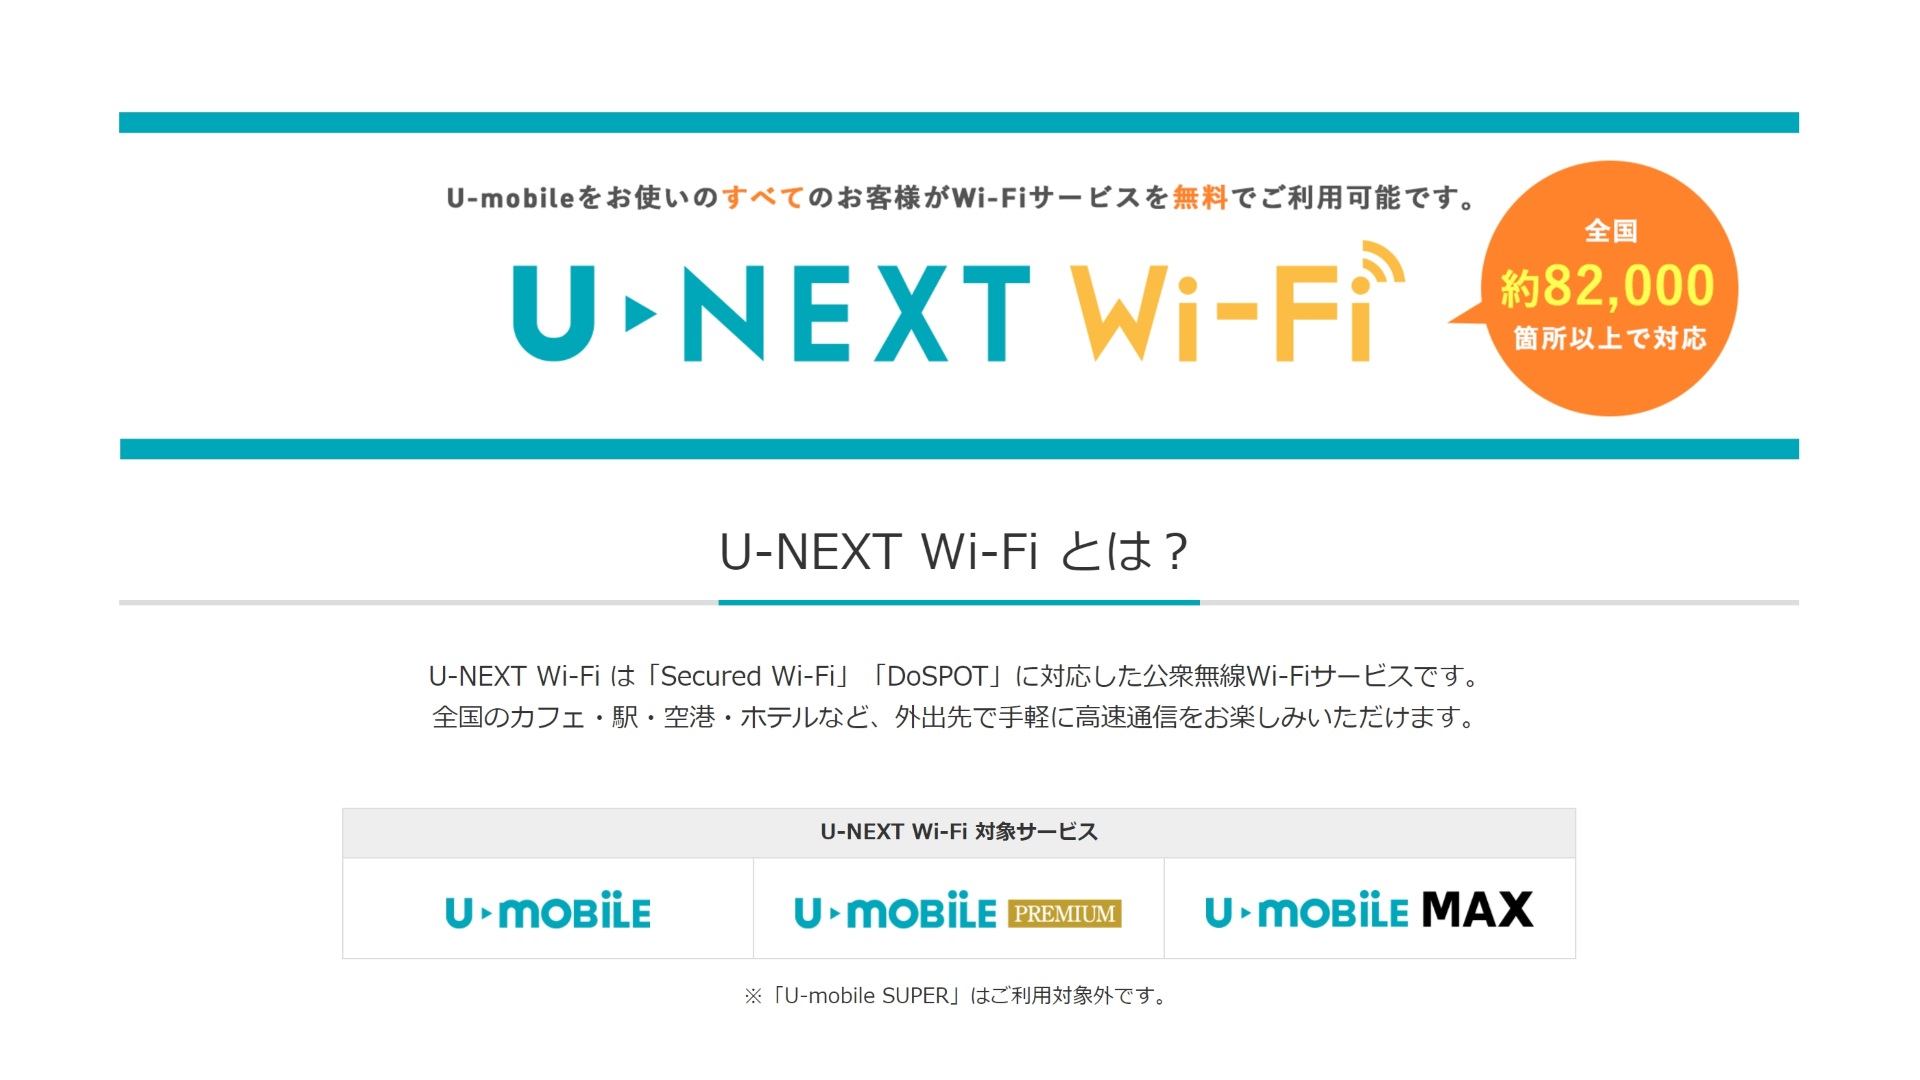 U-mobile Sは「U-NEXT Wi-Fi」未対応、ただし現在準備中